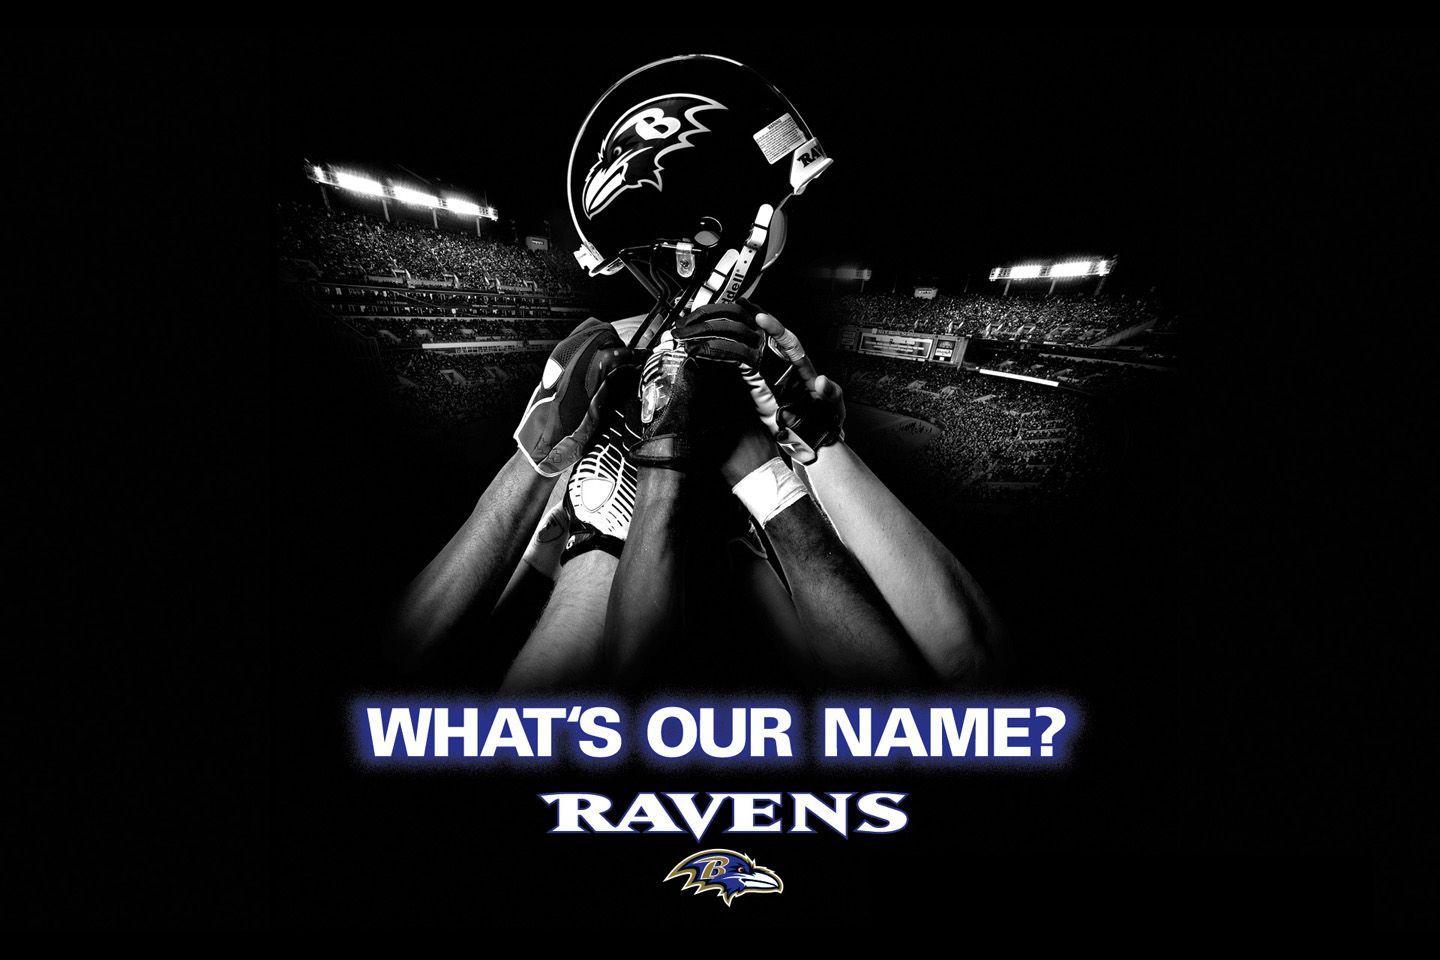 Baltimore Ravens Wallpaper Picture 23975 Image. wallgraf